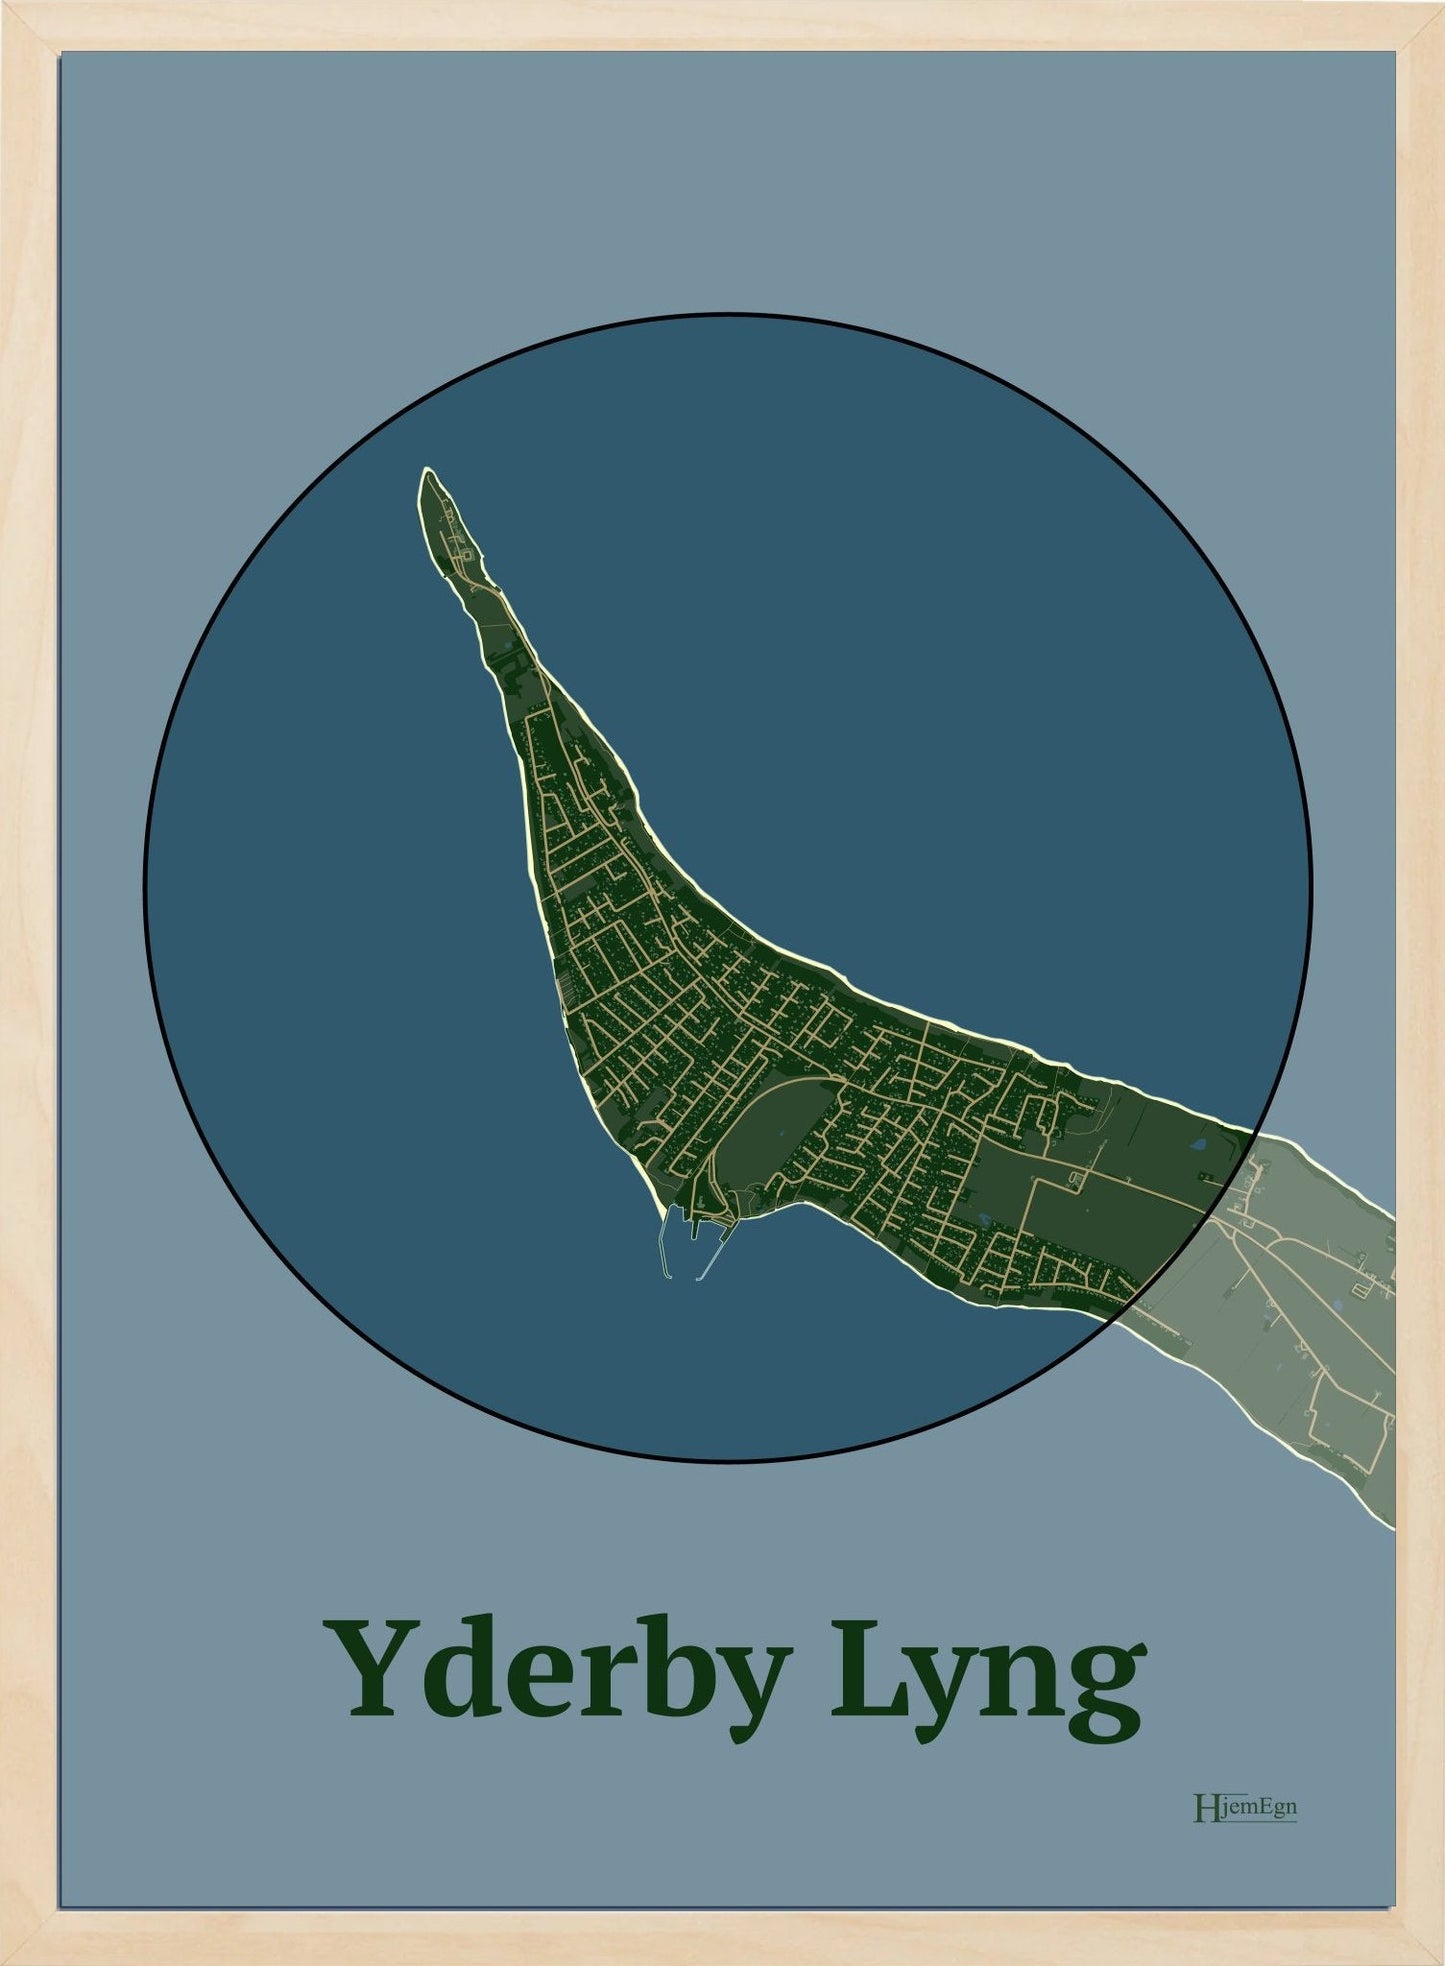 Yderby Lyng plakat i farve mørk grøn og HjemEgn.dk design centrum. Design bykort for Yderby Lyng